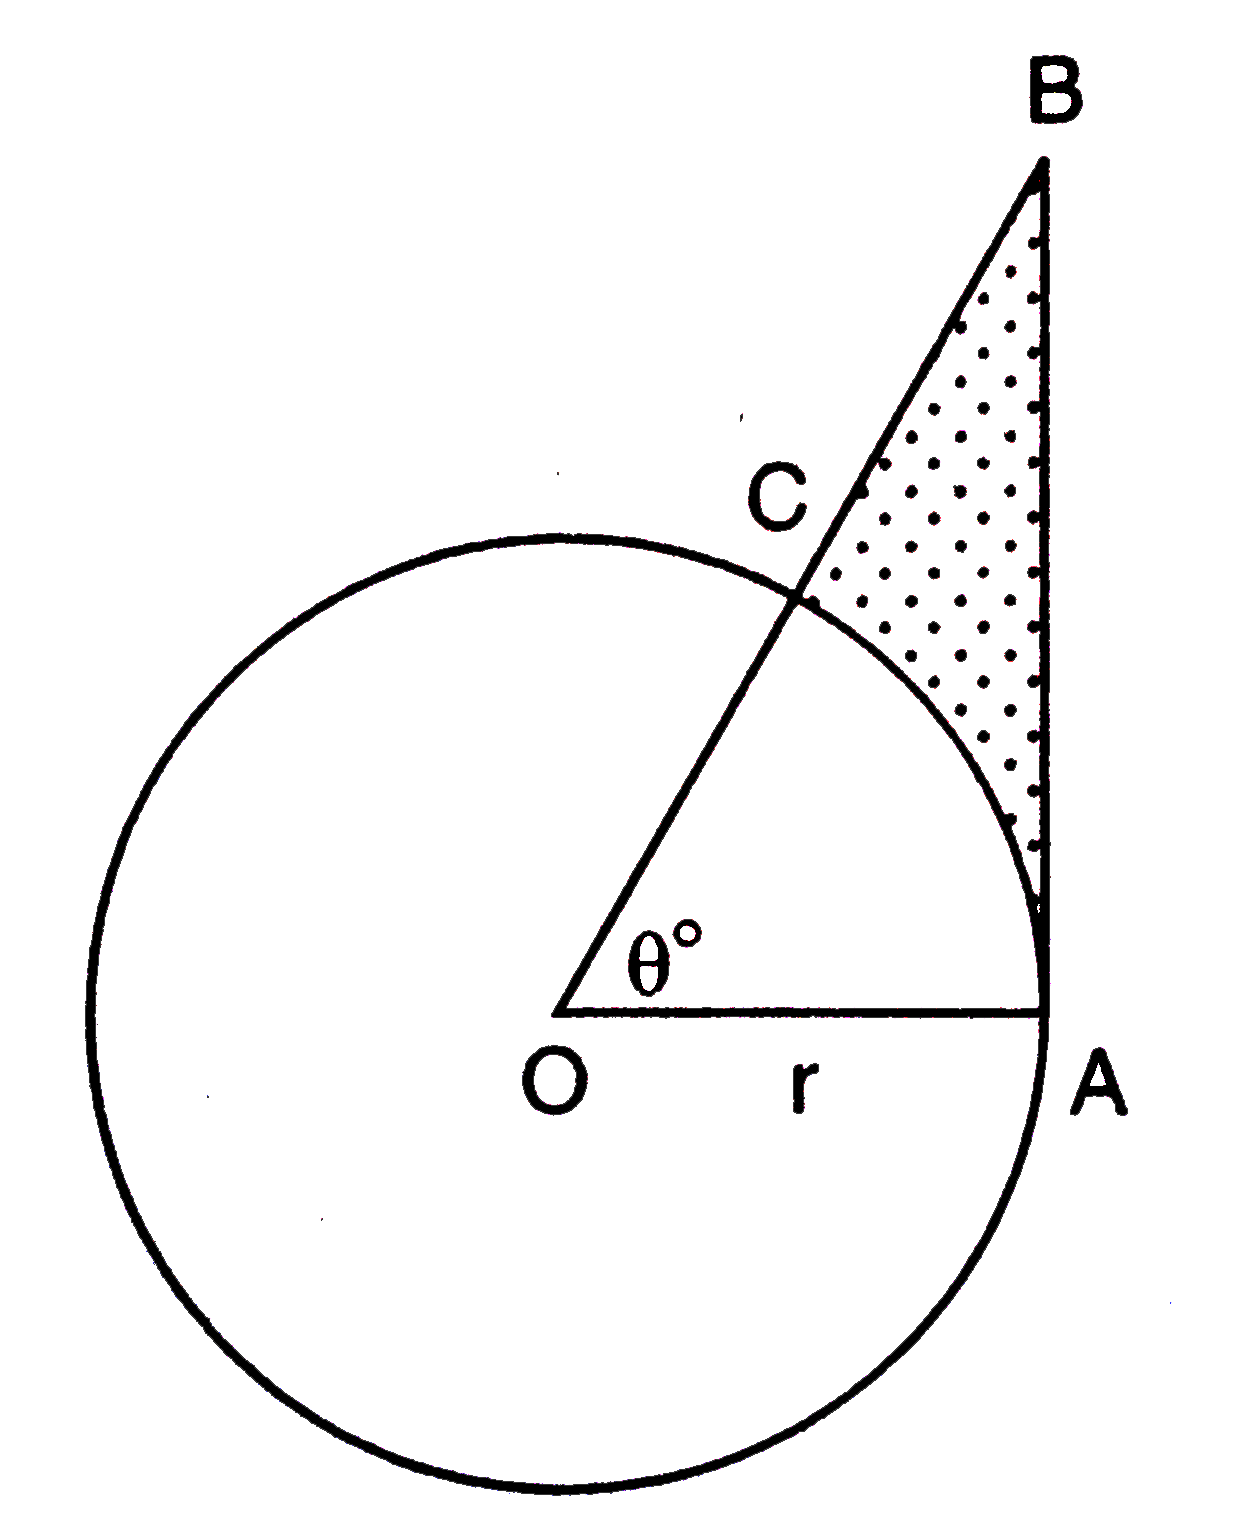 चित्र में वृत्त का केन्द्र बिन्दु O तथा एक कोण angleAOC=theta^(@) दिया गया है | सिद्ध कीजिए कि :      छायांकित क्षेत्र का क्षेत्रफल =(r^(2))/(2)(tan theta-(pi theta)/(180))